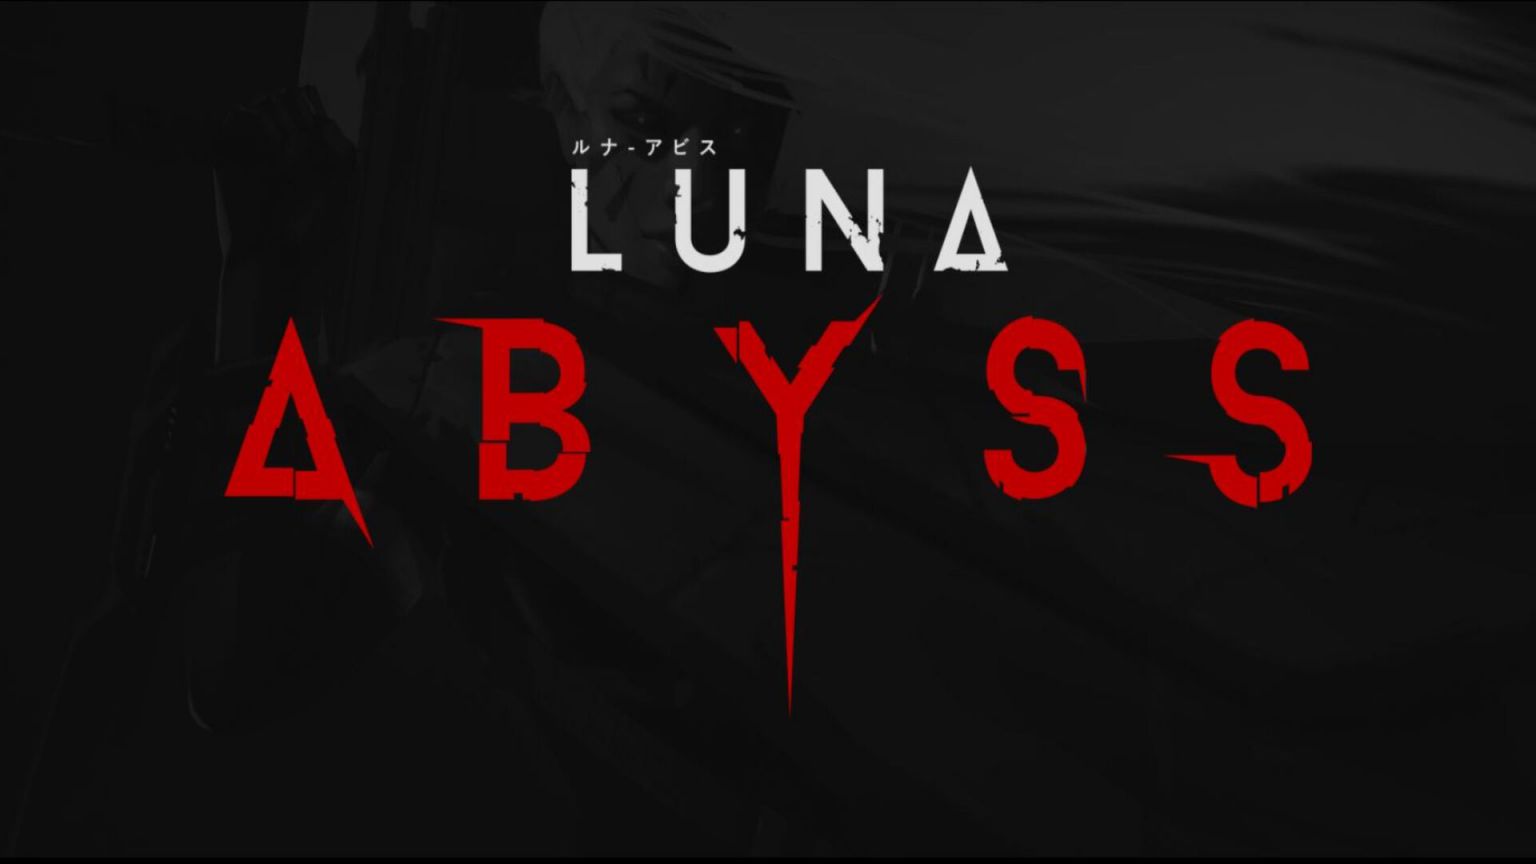 Luna-Abyss